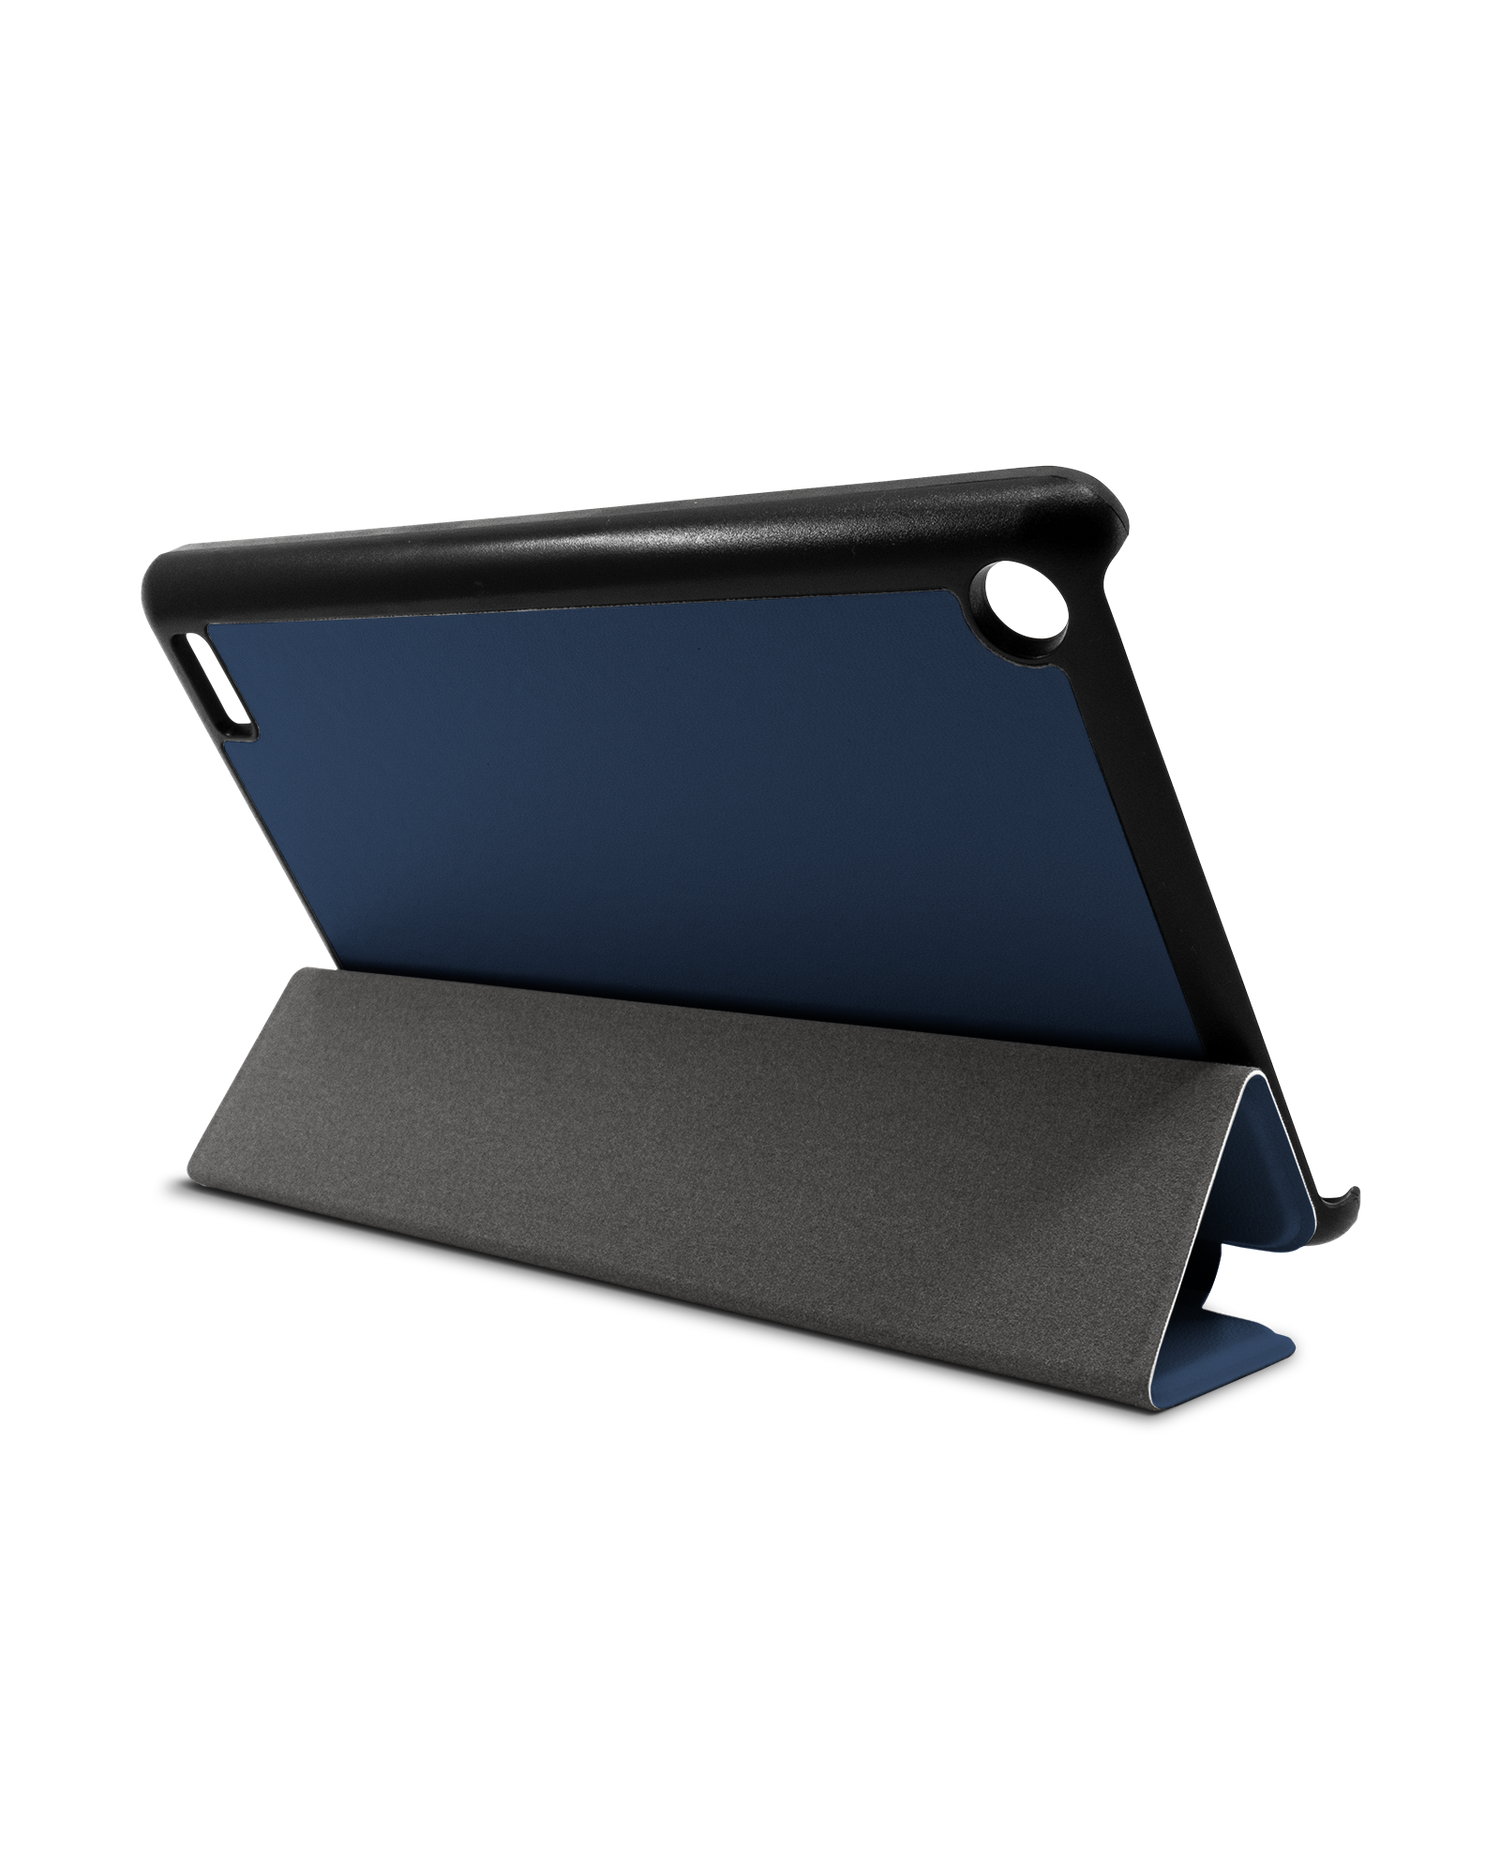 NAVY Tablet Smart Case für Amazon Fire 7: Aufgestellt im Querformat